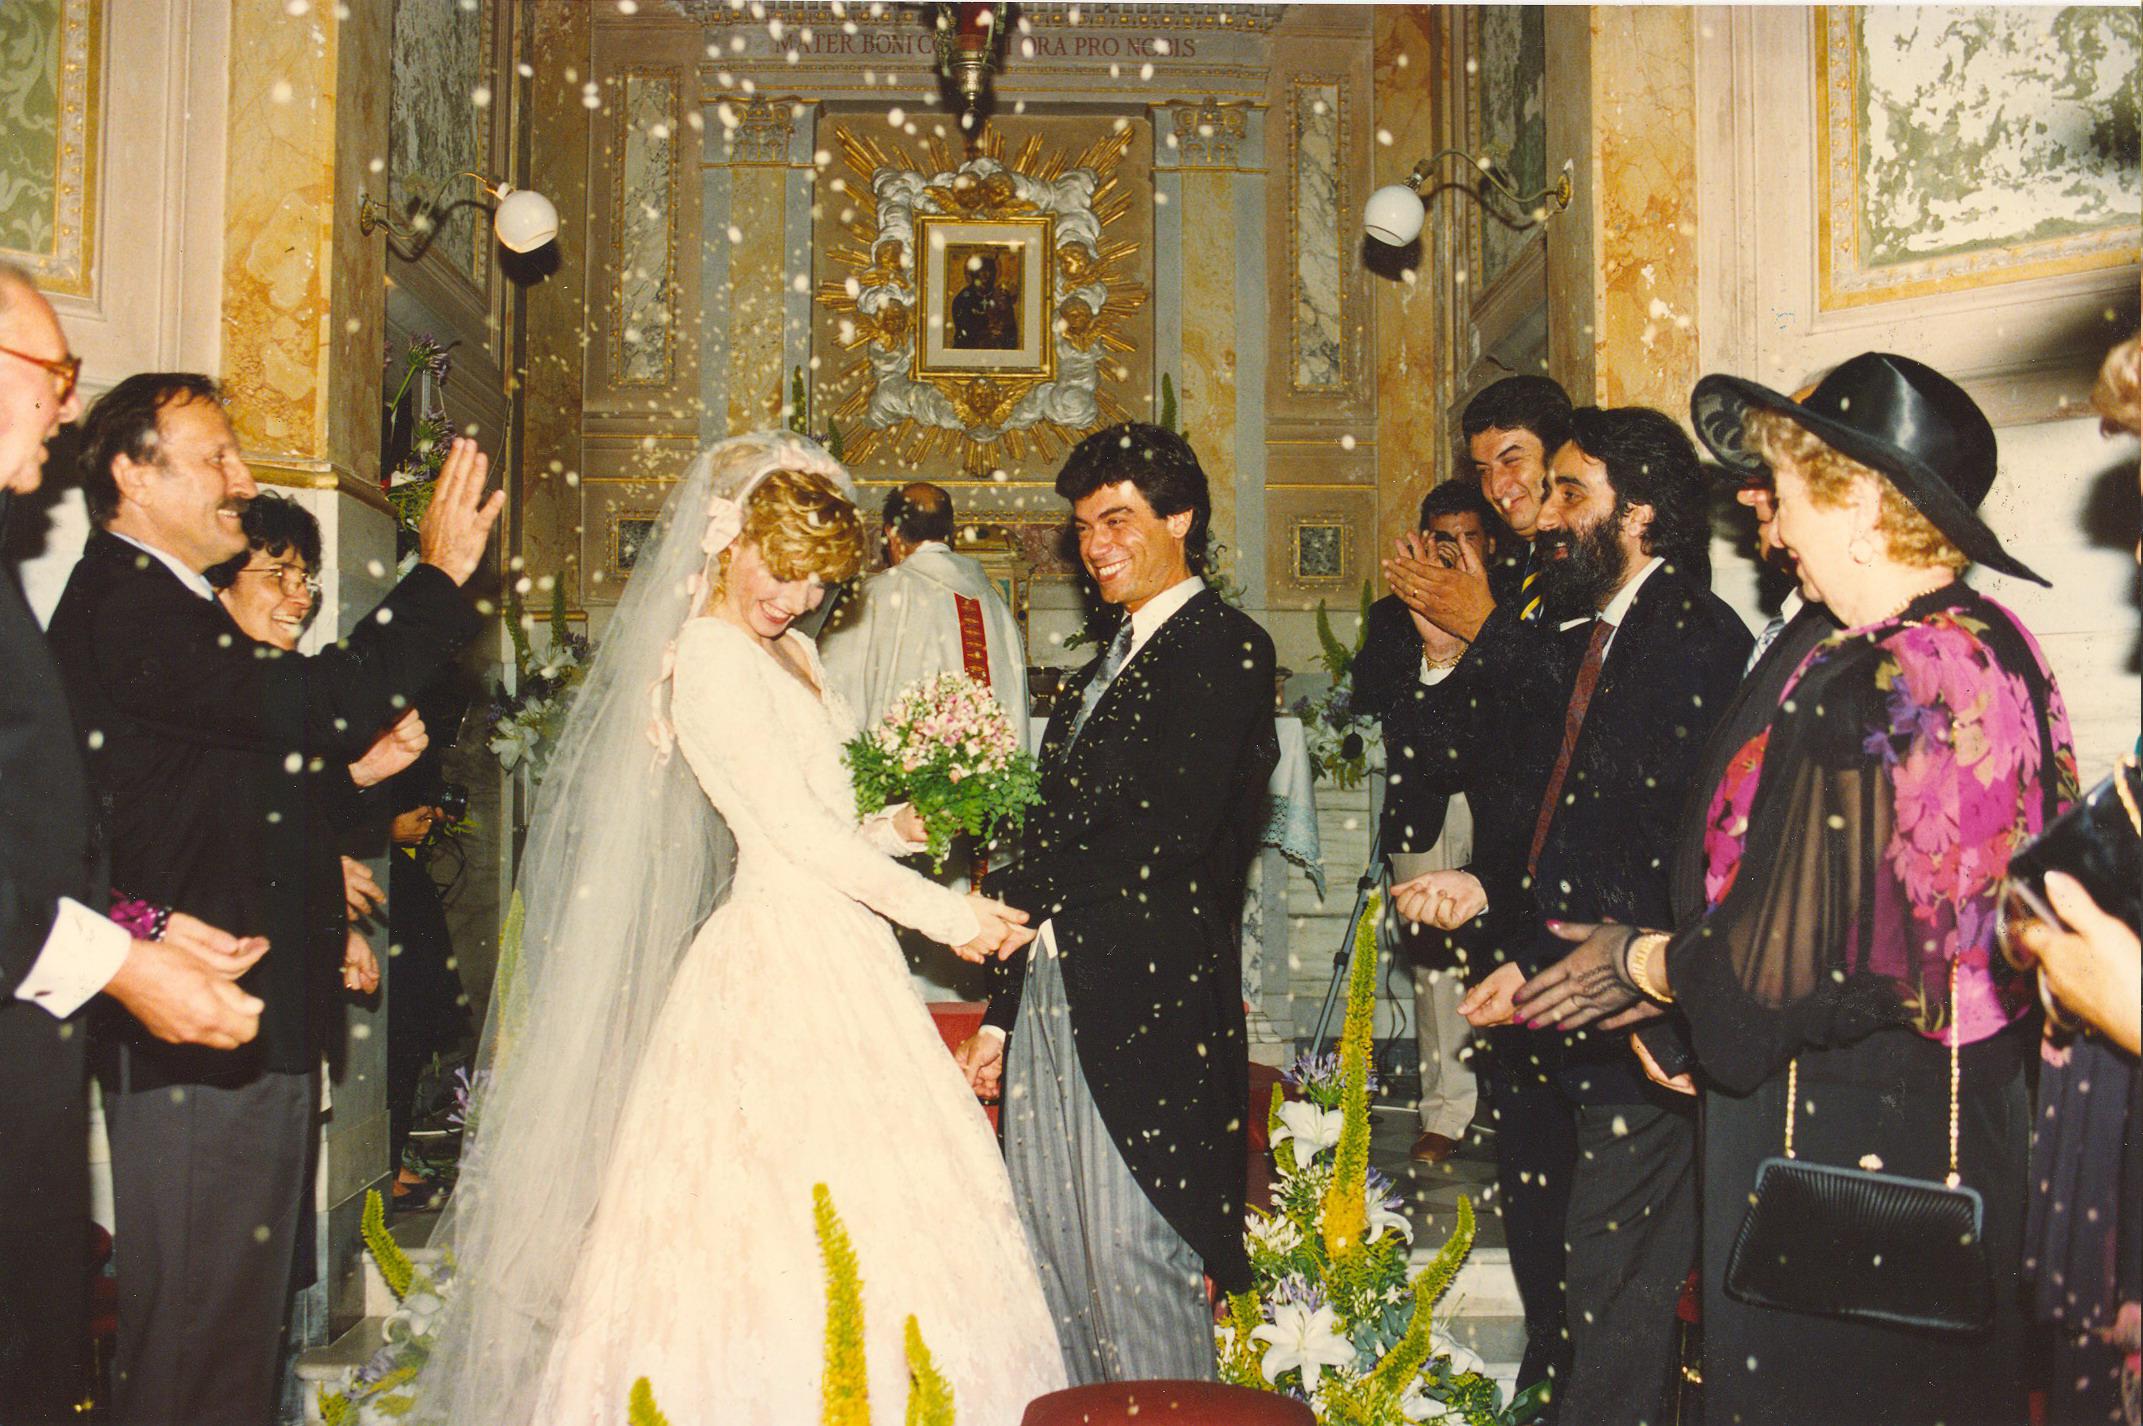 Foto dall'album di nozze di Lorella Cuccarini che ha sposato il 3 agosto del 1991 Silvio Testi 